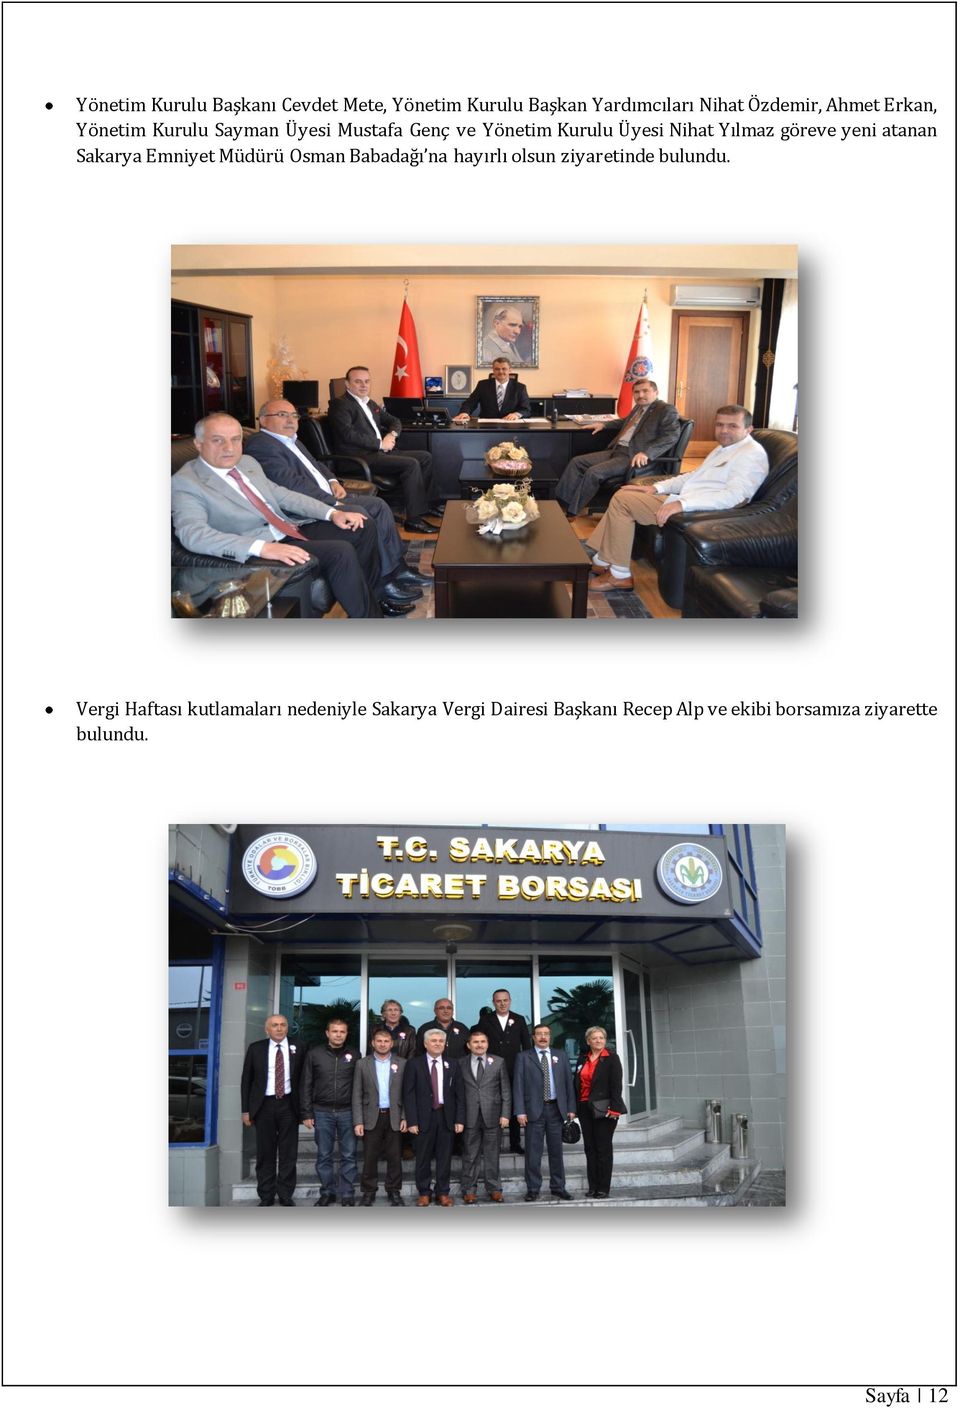 Sakarya Emniyet Müdürü Osman Babadağı na hayırlı olsun ziyaretinde bulundu.